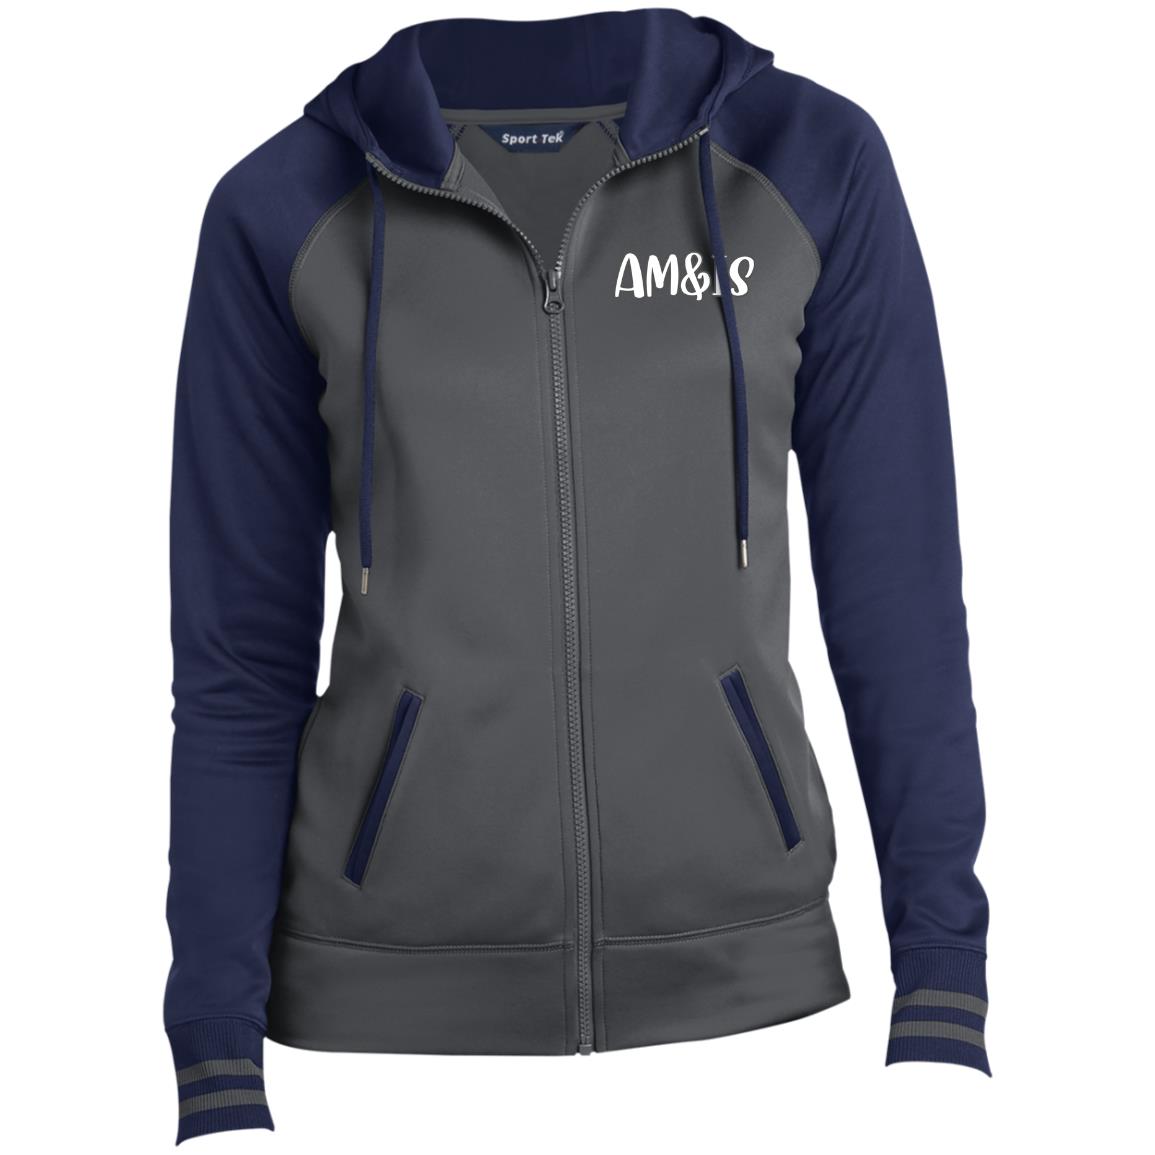 DARK SMOKE/NAVY - AM&IS Activewear Ladies' Sport-Wick® Full-Zip Hooded Jacket - womens jacket at TFC&H Co.